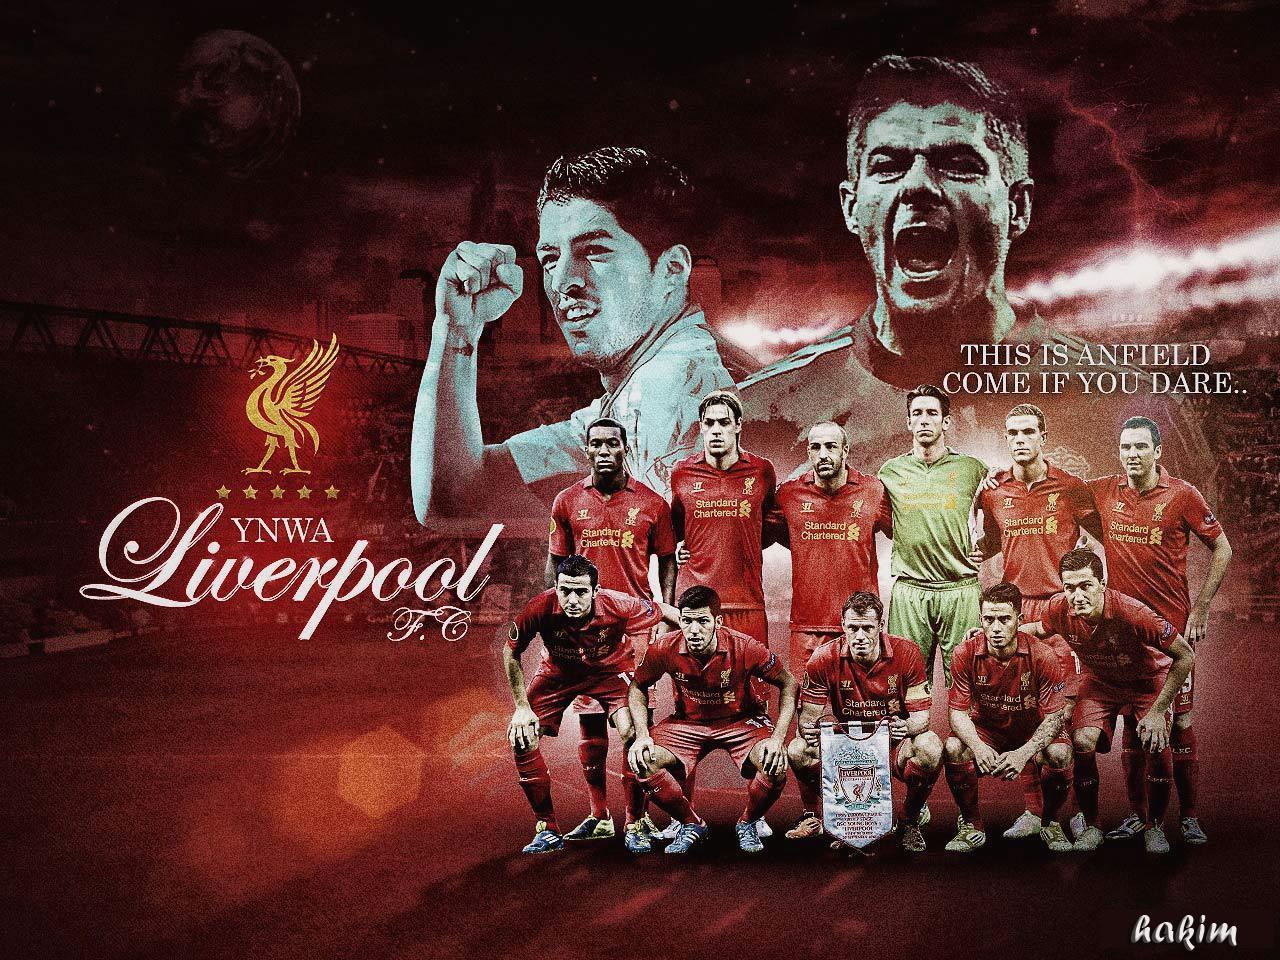 Liverpool FC Wallpaper HD Download